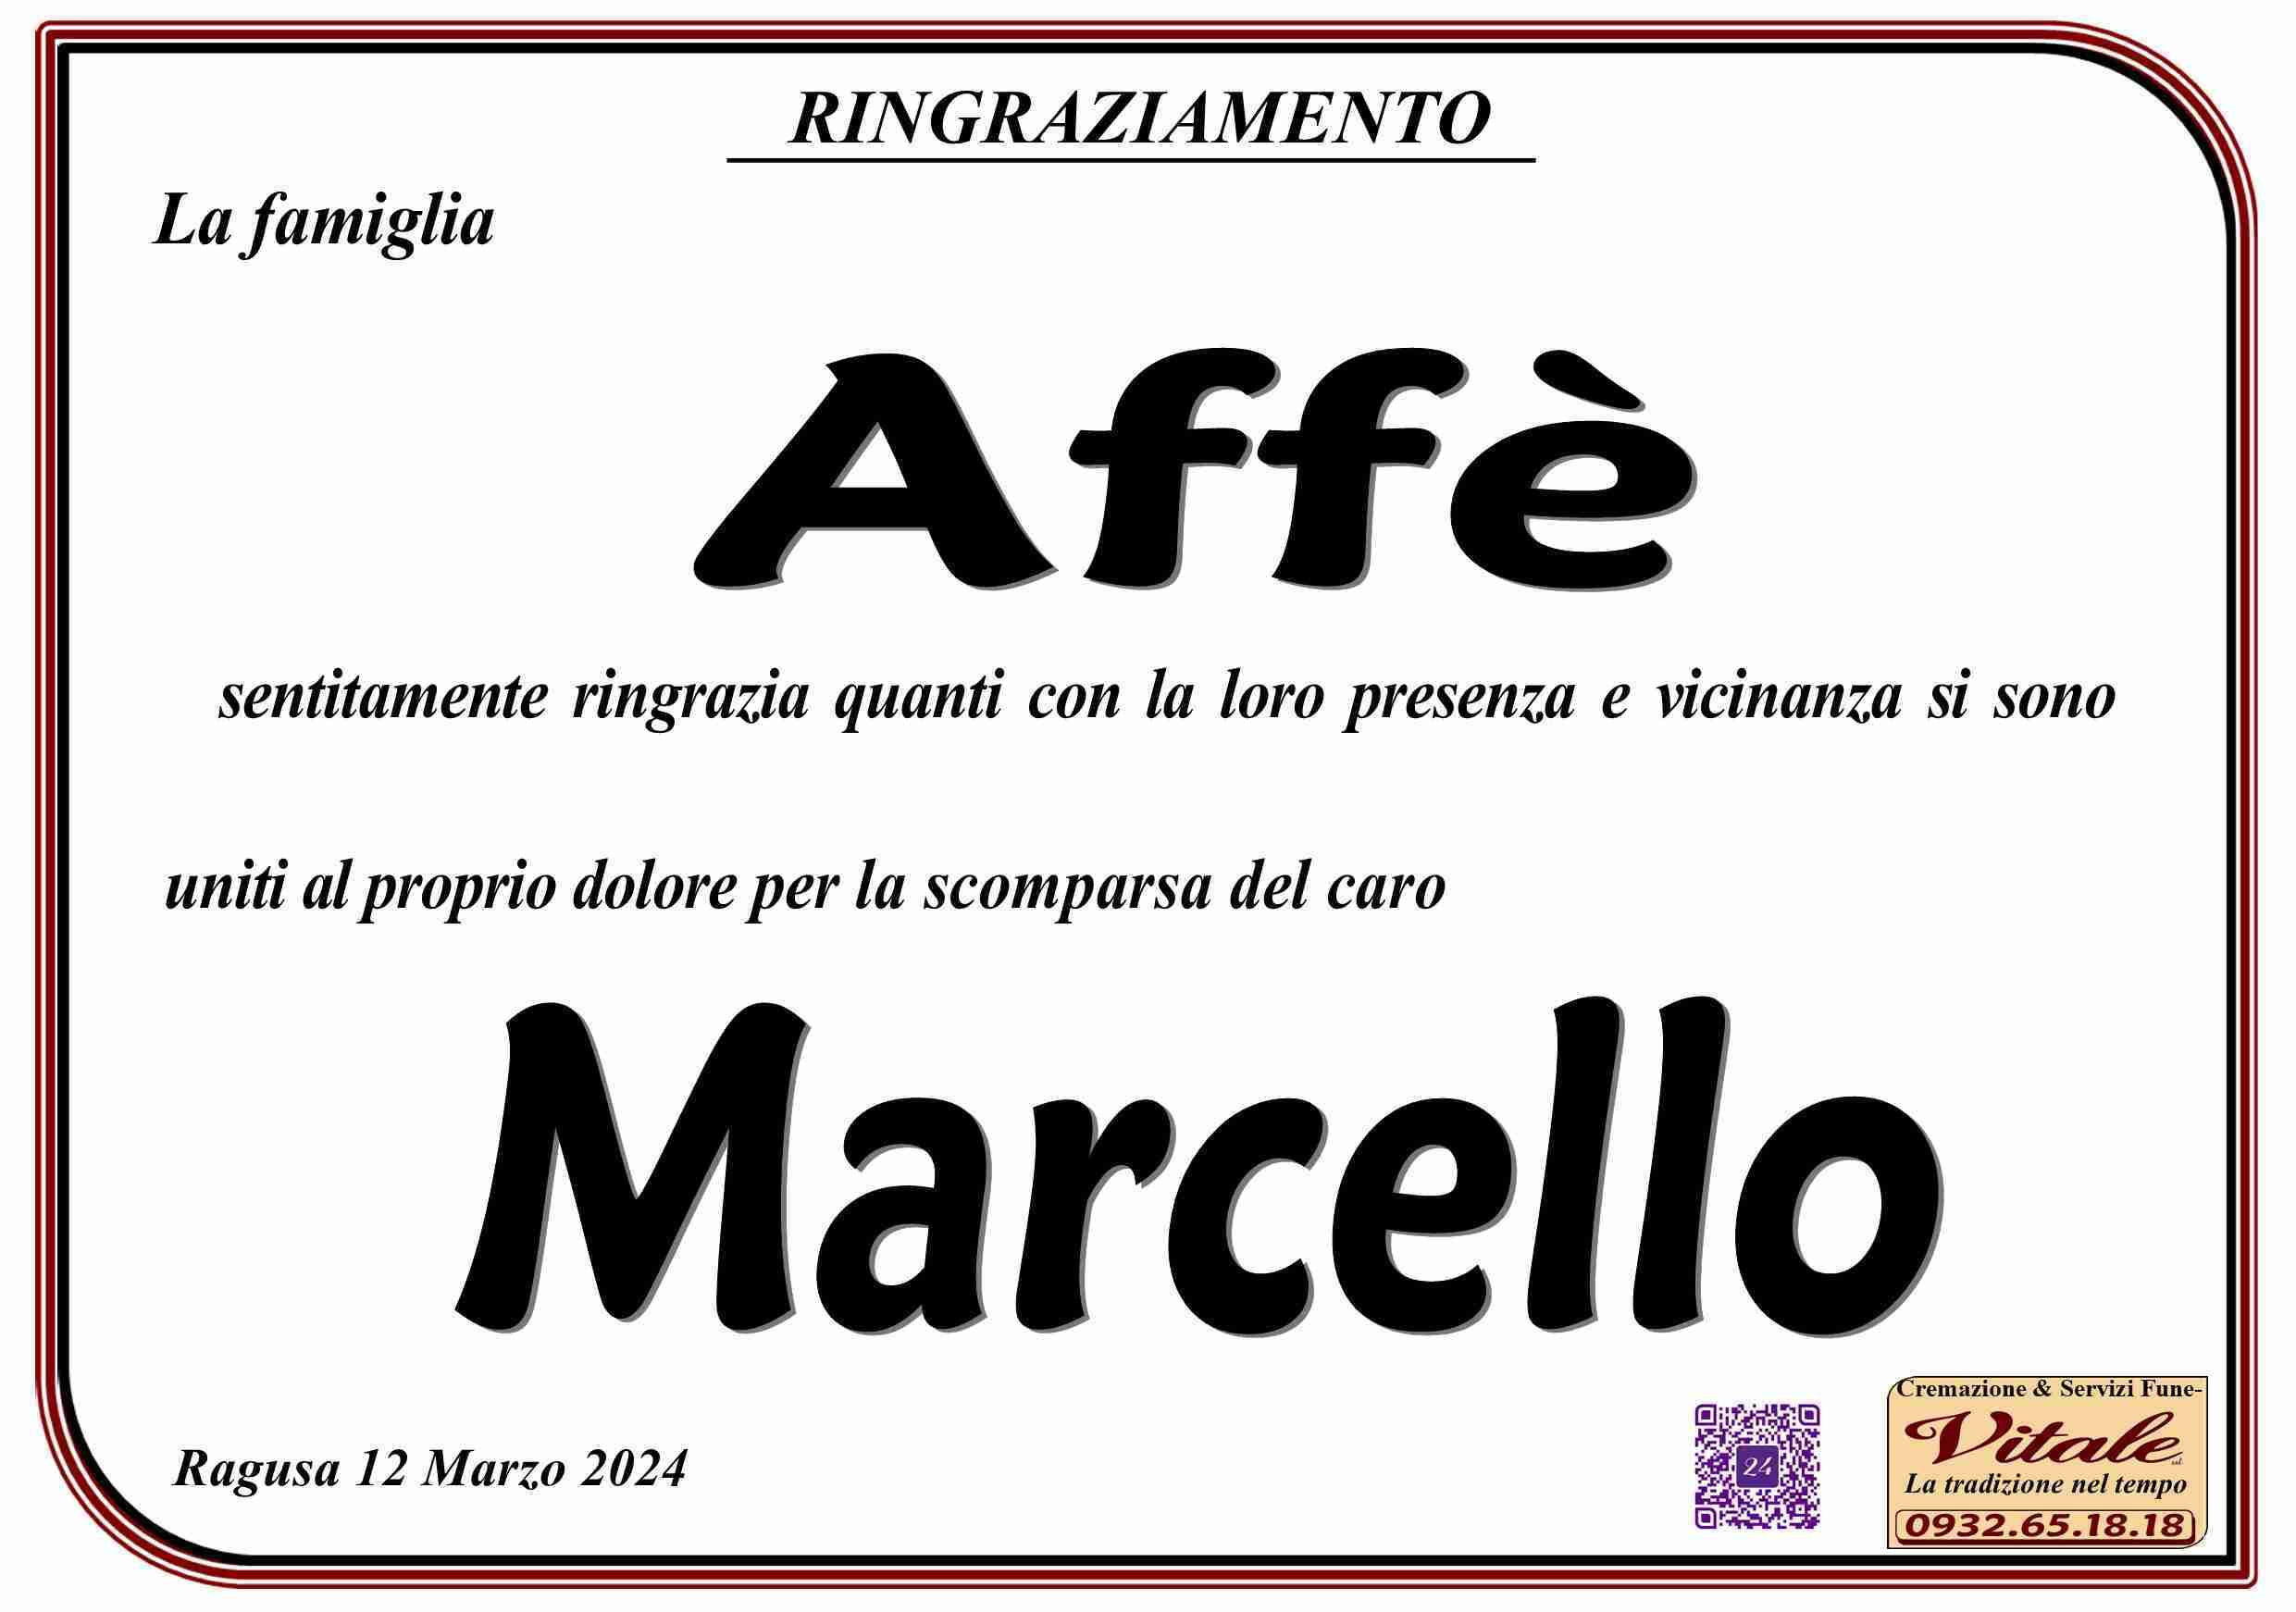 Marcello Affè